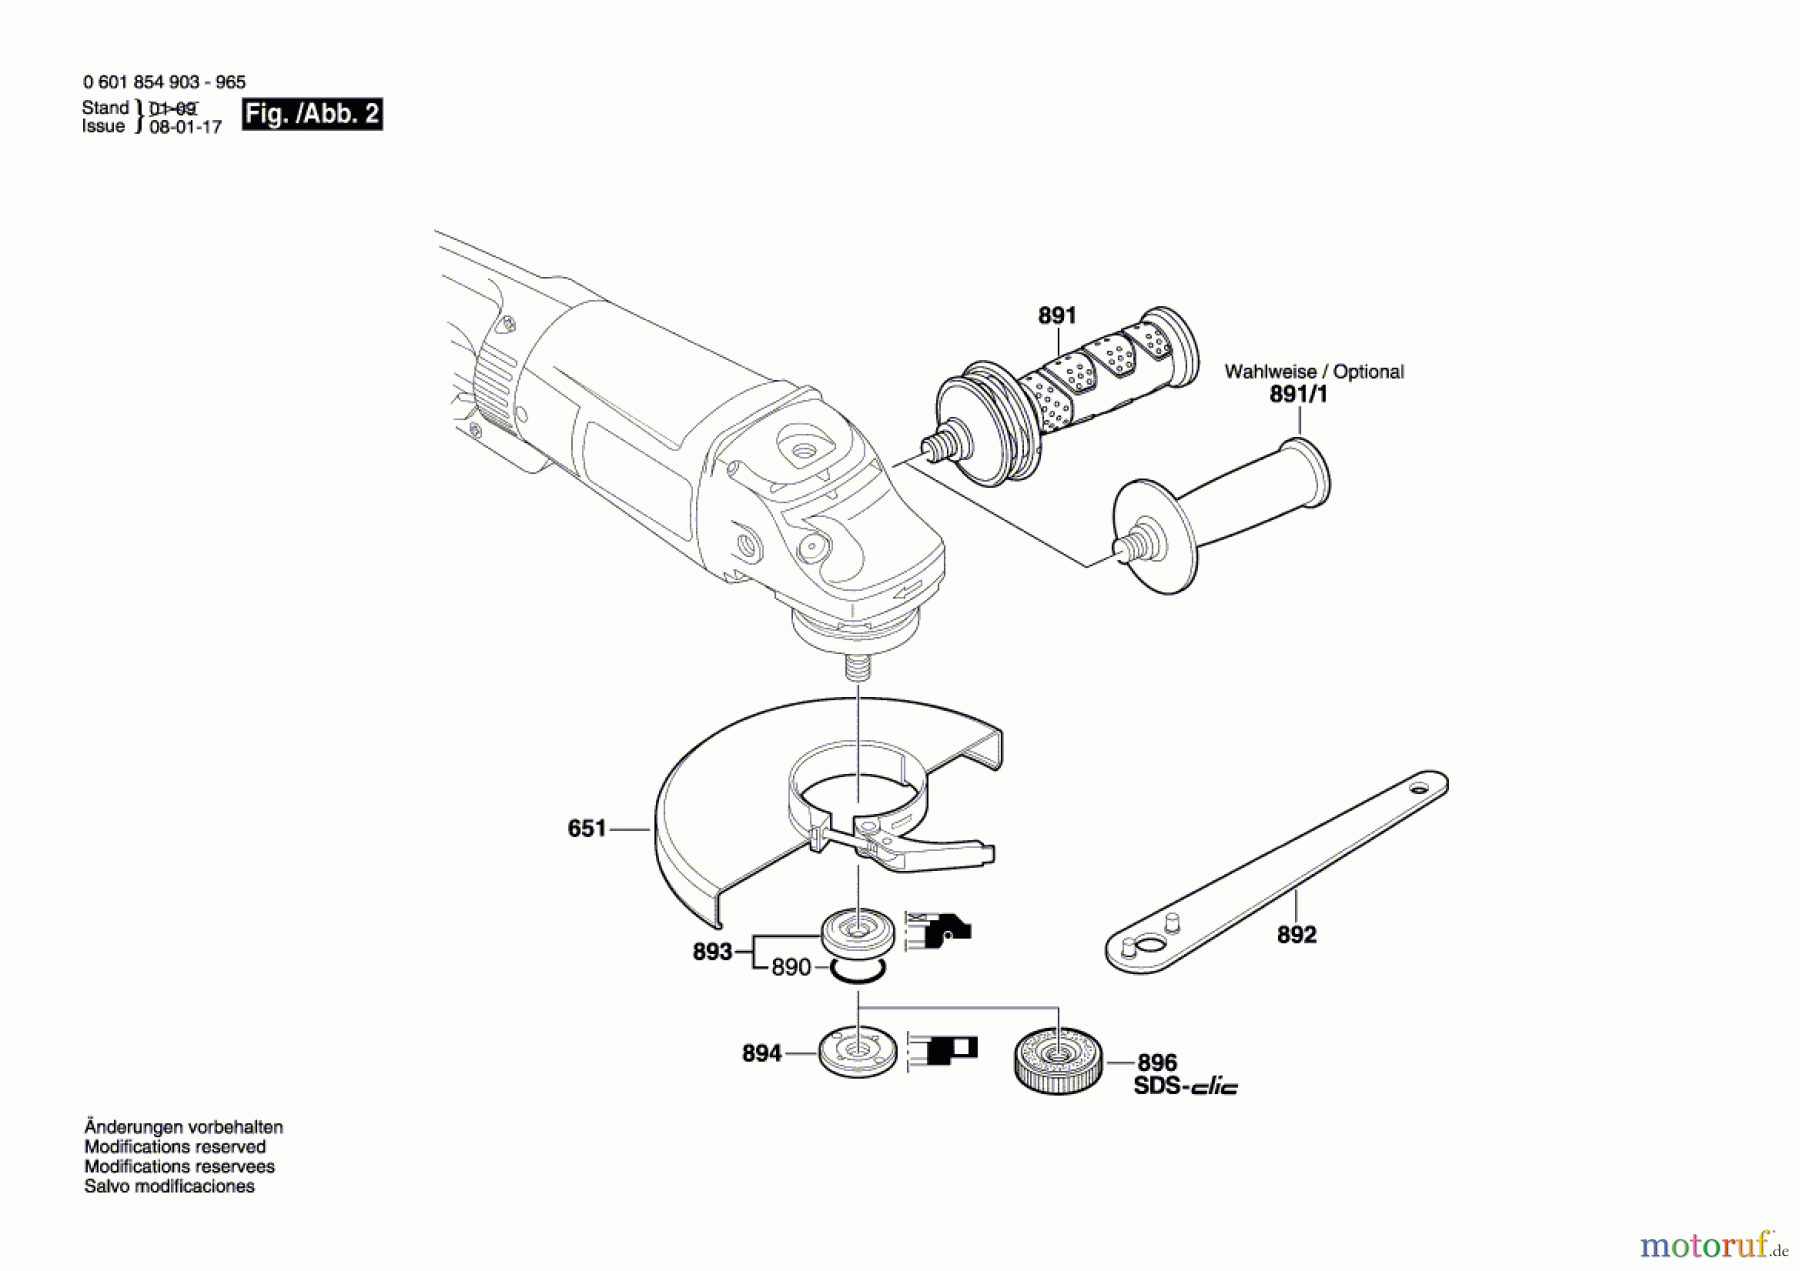  Bosch Werkzeug Winkelschleifer GWS 24-230 JB Seite 2